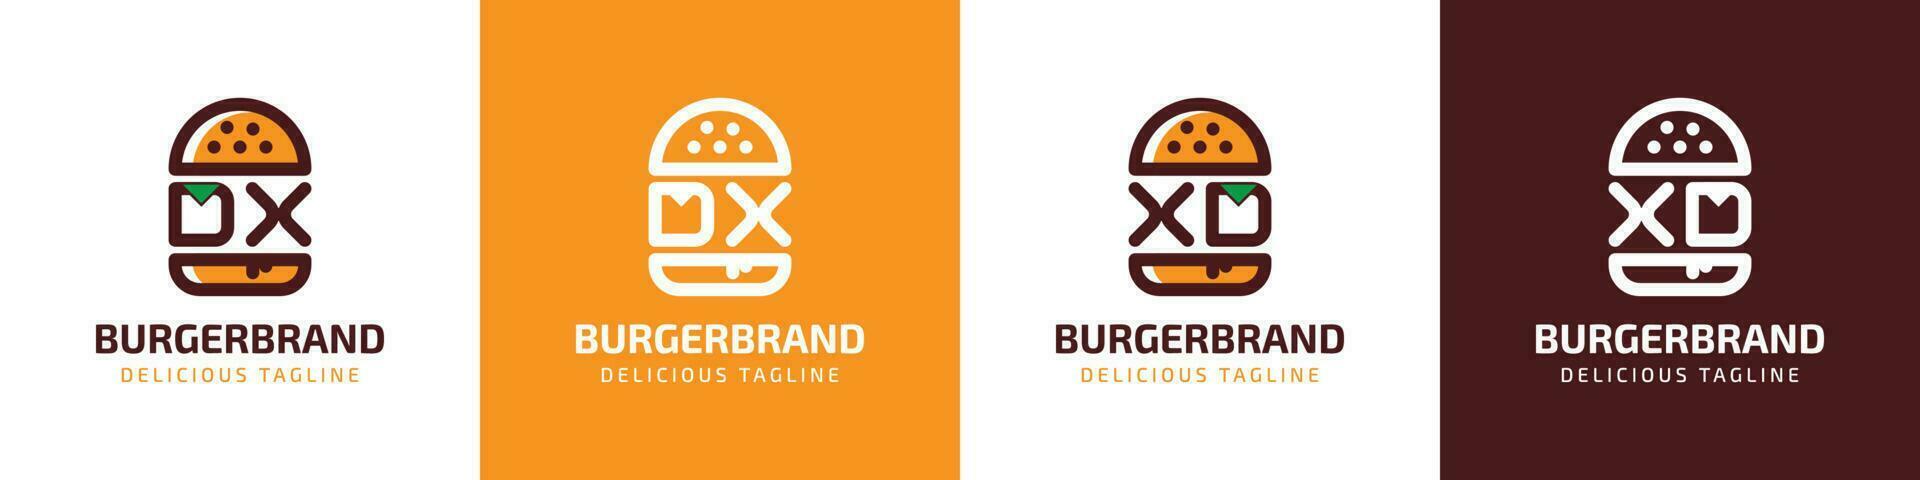 carta dx e xd hamburguer logotipo, adequado para qualquer o negócio relacionado para hamburguer com dx ou xd iniciais. vetor